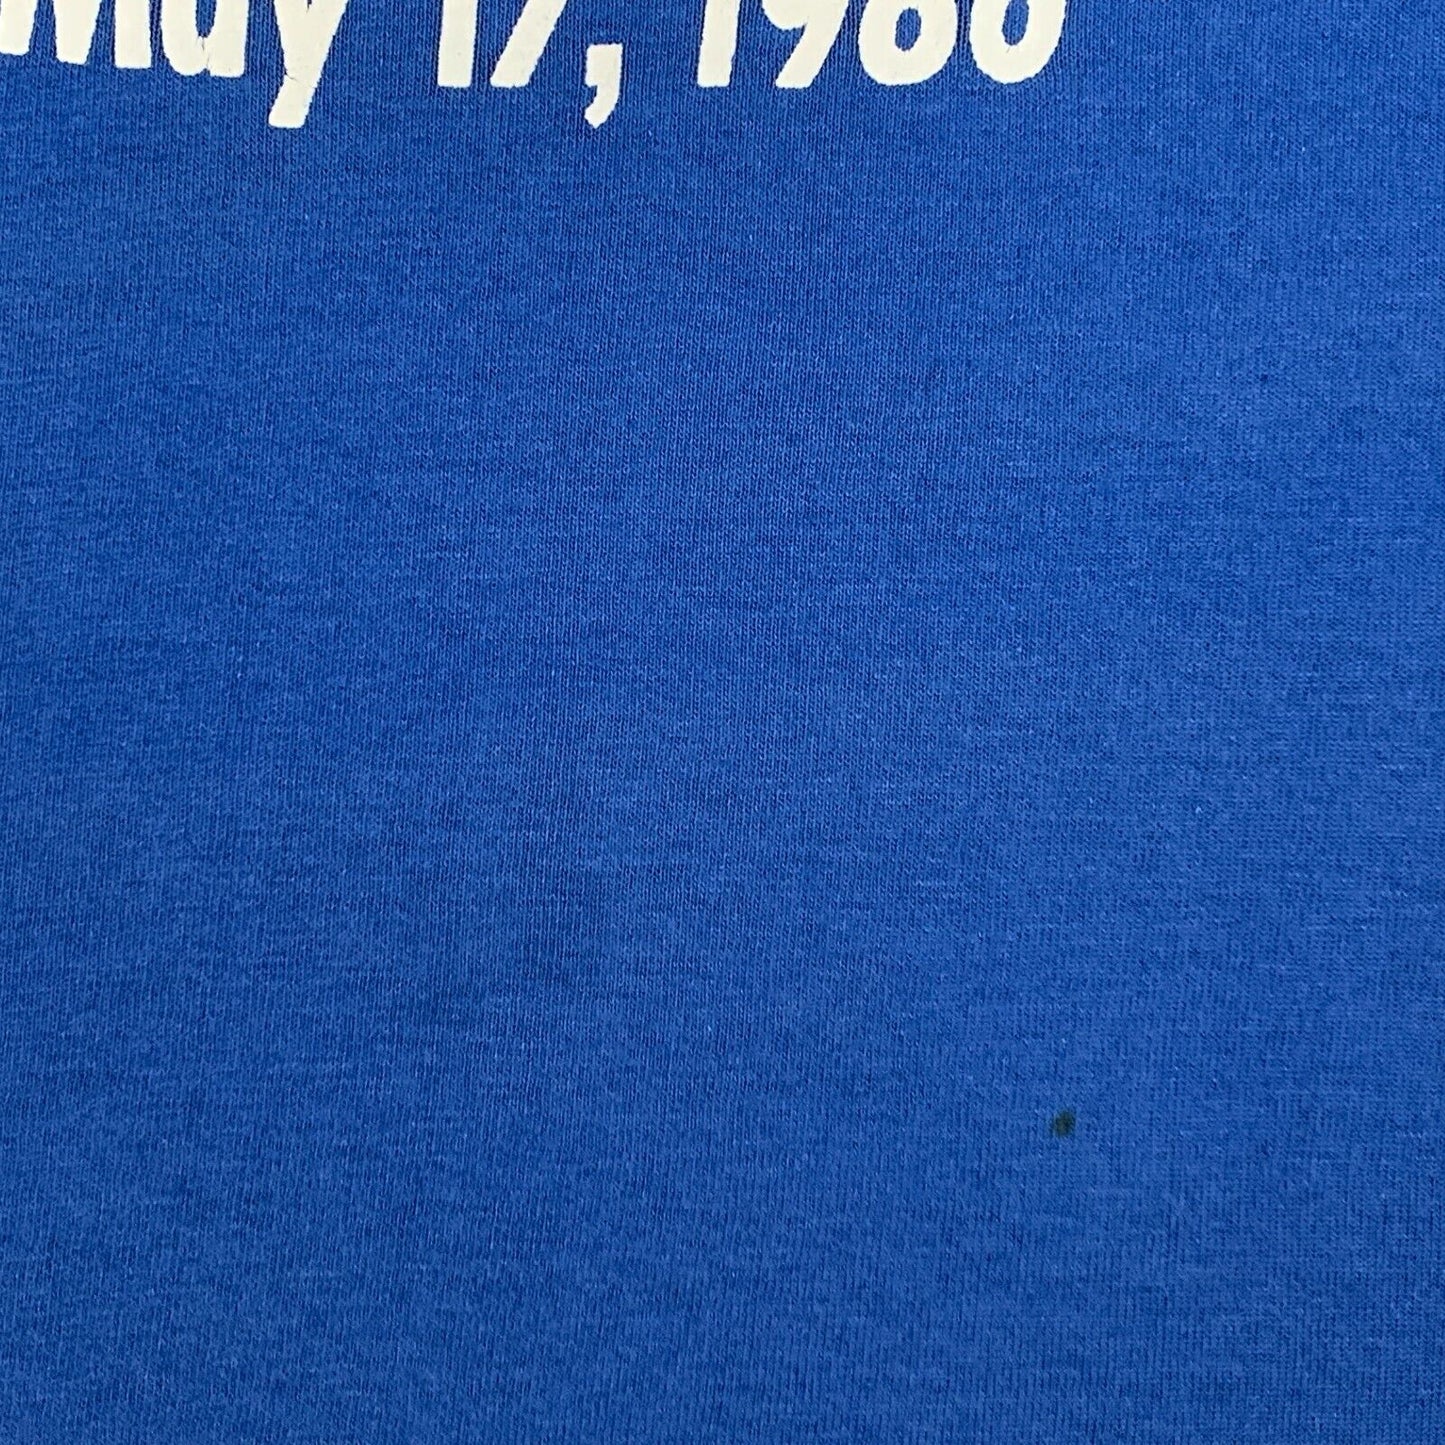 1986 休斯顿酒吧串烧复古 80 年代 T 恤啤酒酒吧德克萨斯州美国制造 T 恤中号